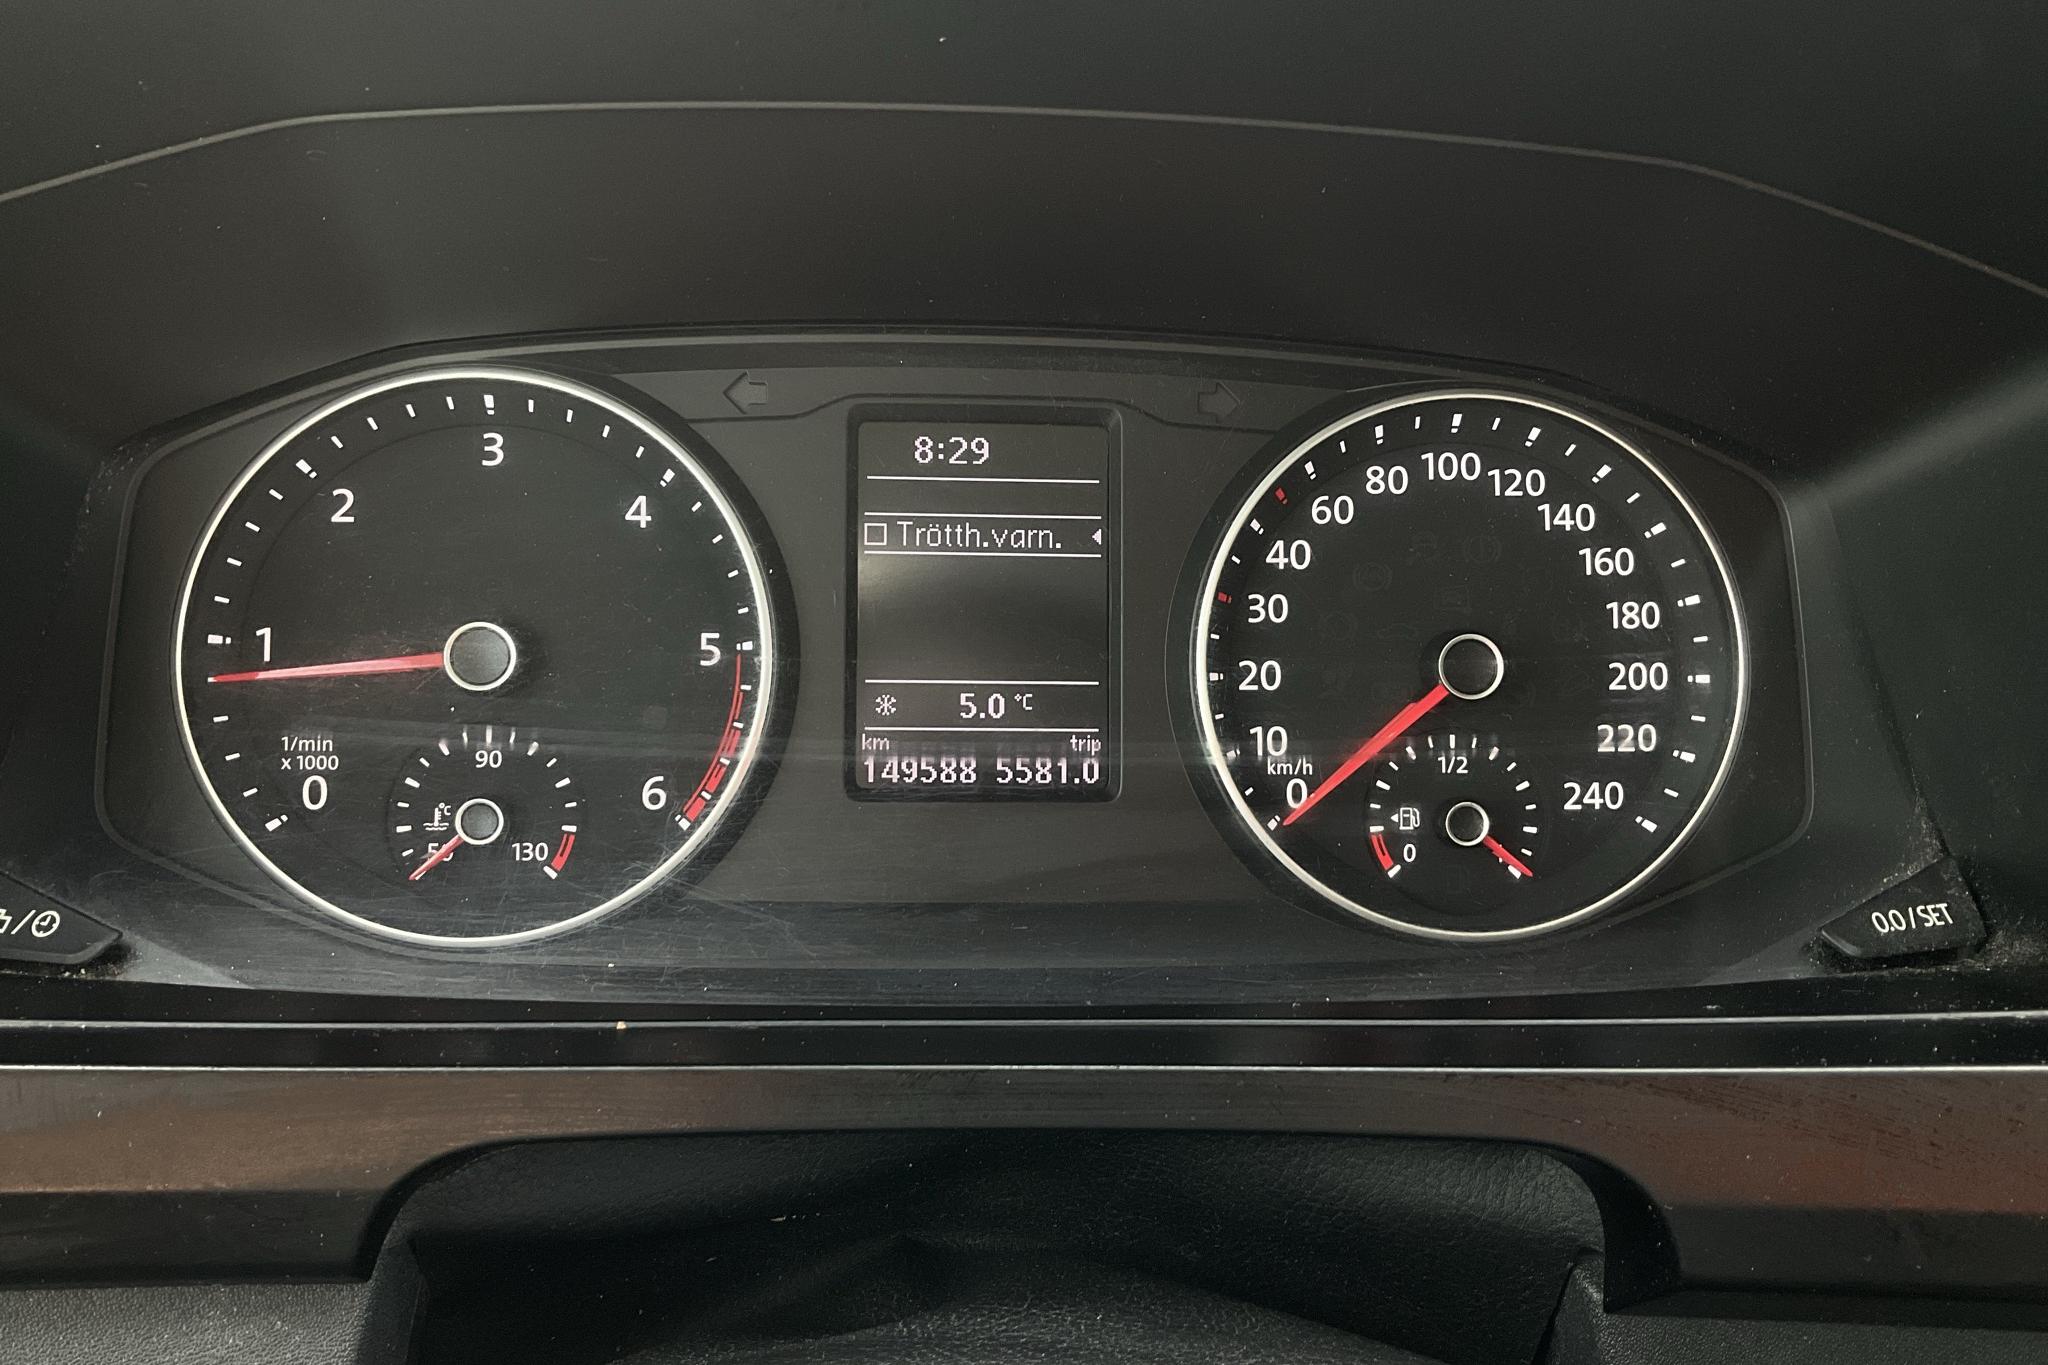 VW Transporter T6 2.0 TDI BMT Skåp (150hk) - 14 959 mil - Manuell - vit - 2018